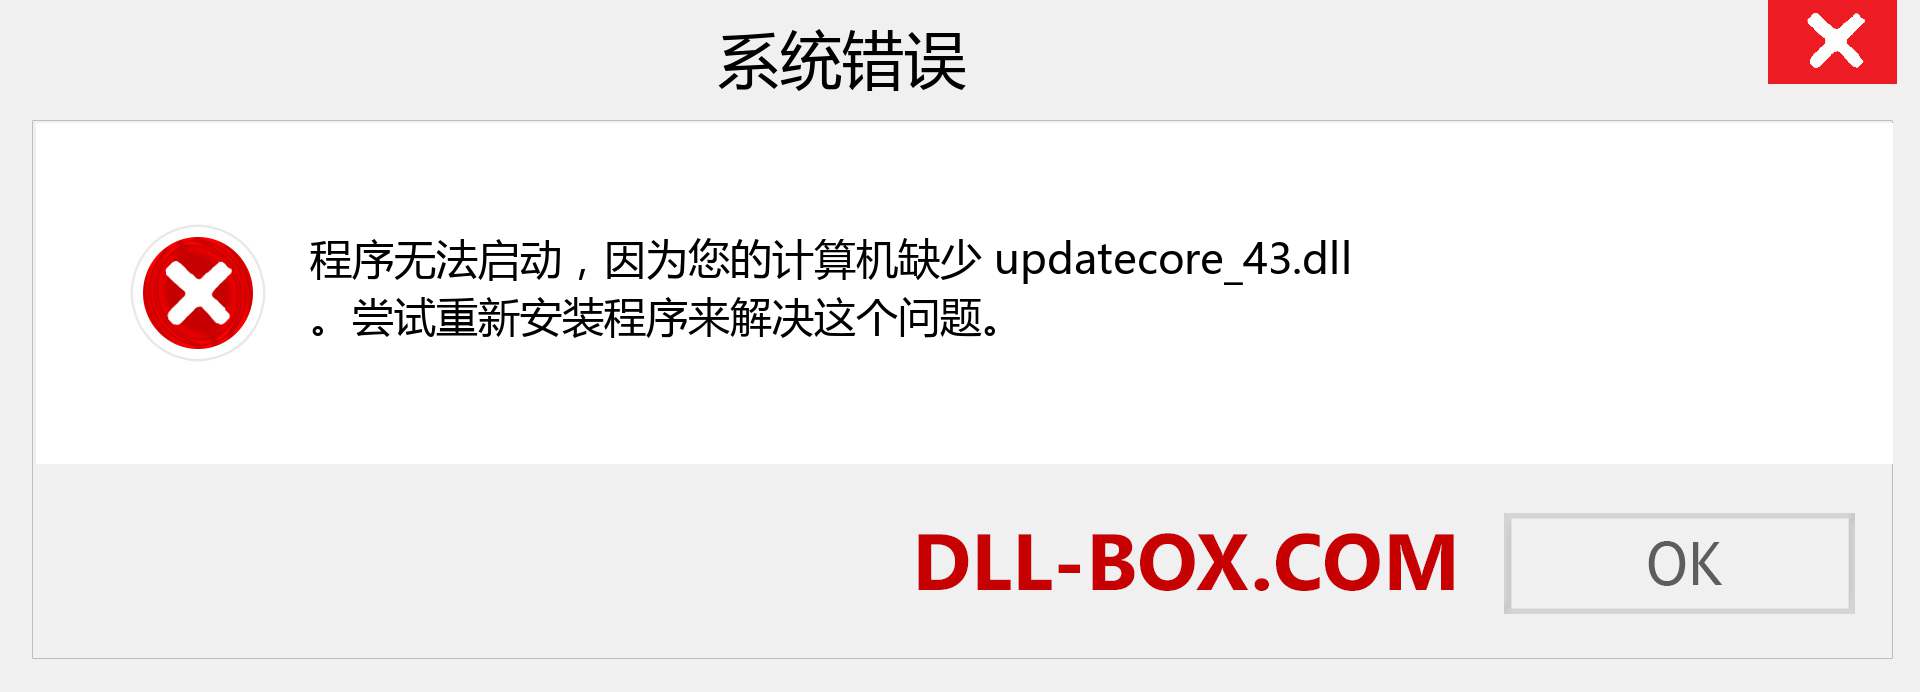 updatecore_43.dll 文件丢失？。 适用于 Windows 7、8、10 的下载 - 修复 Windows、照片、图像上的 updatecore_43 dll 丢失错误